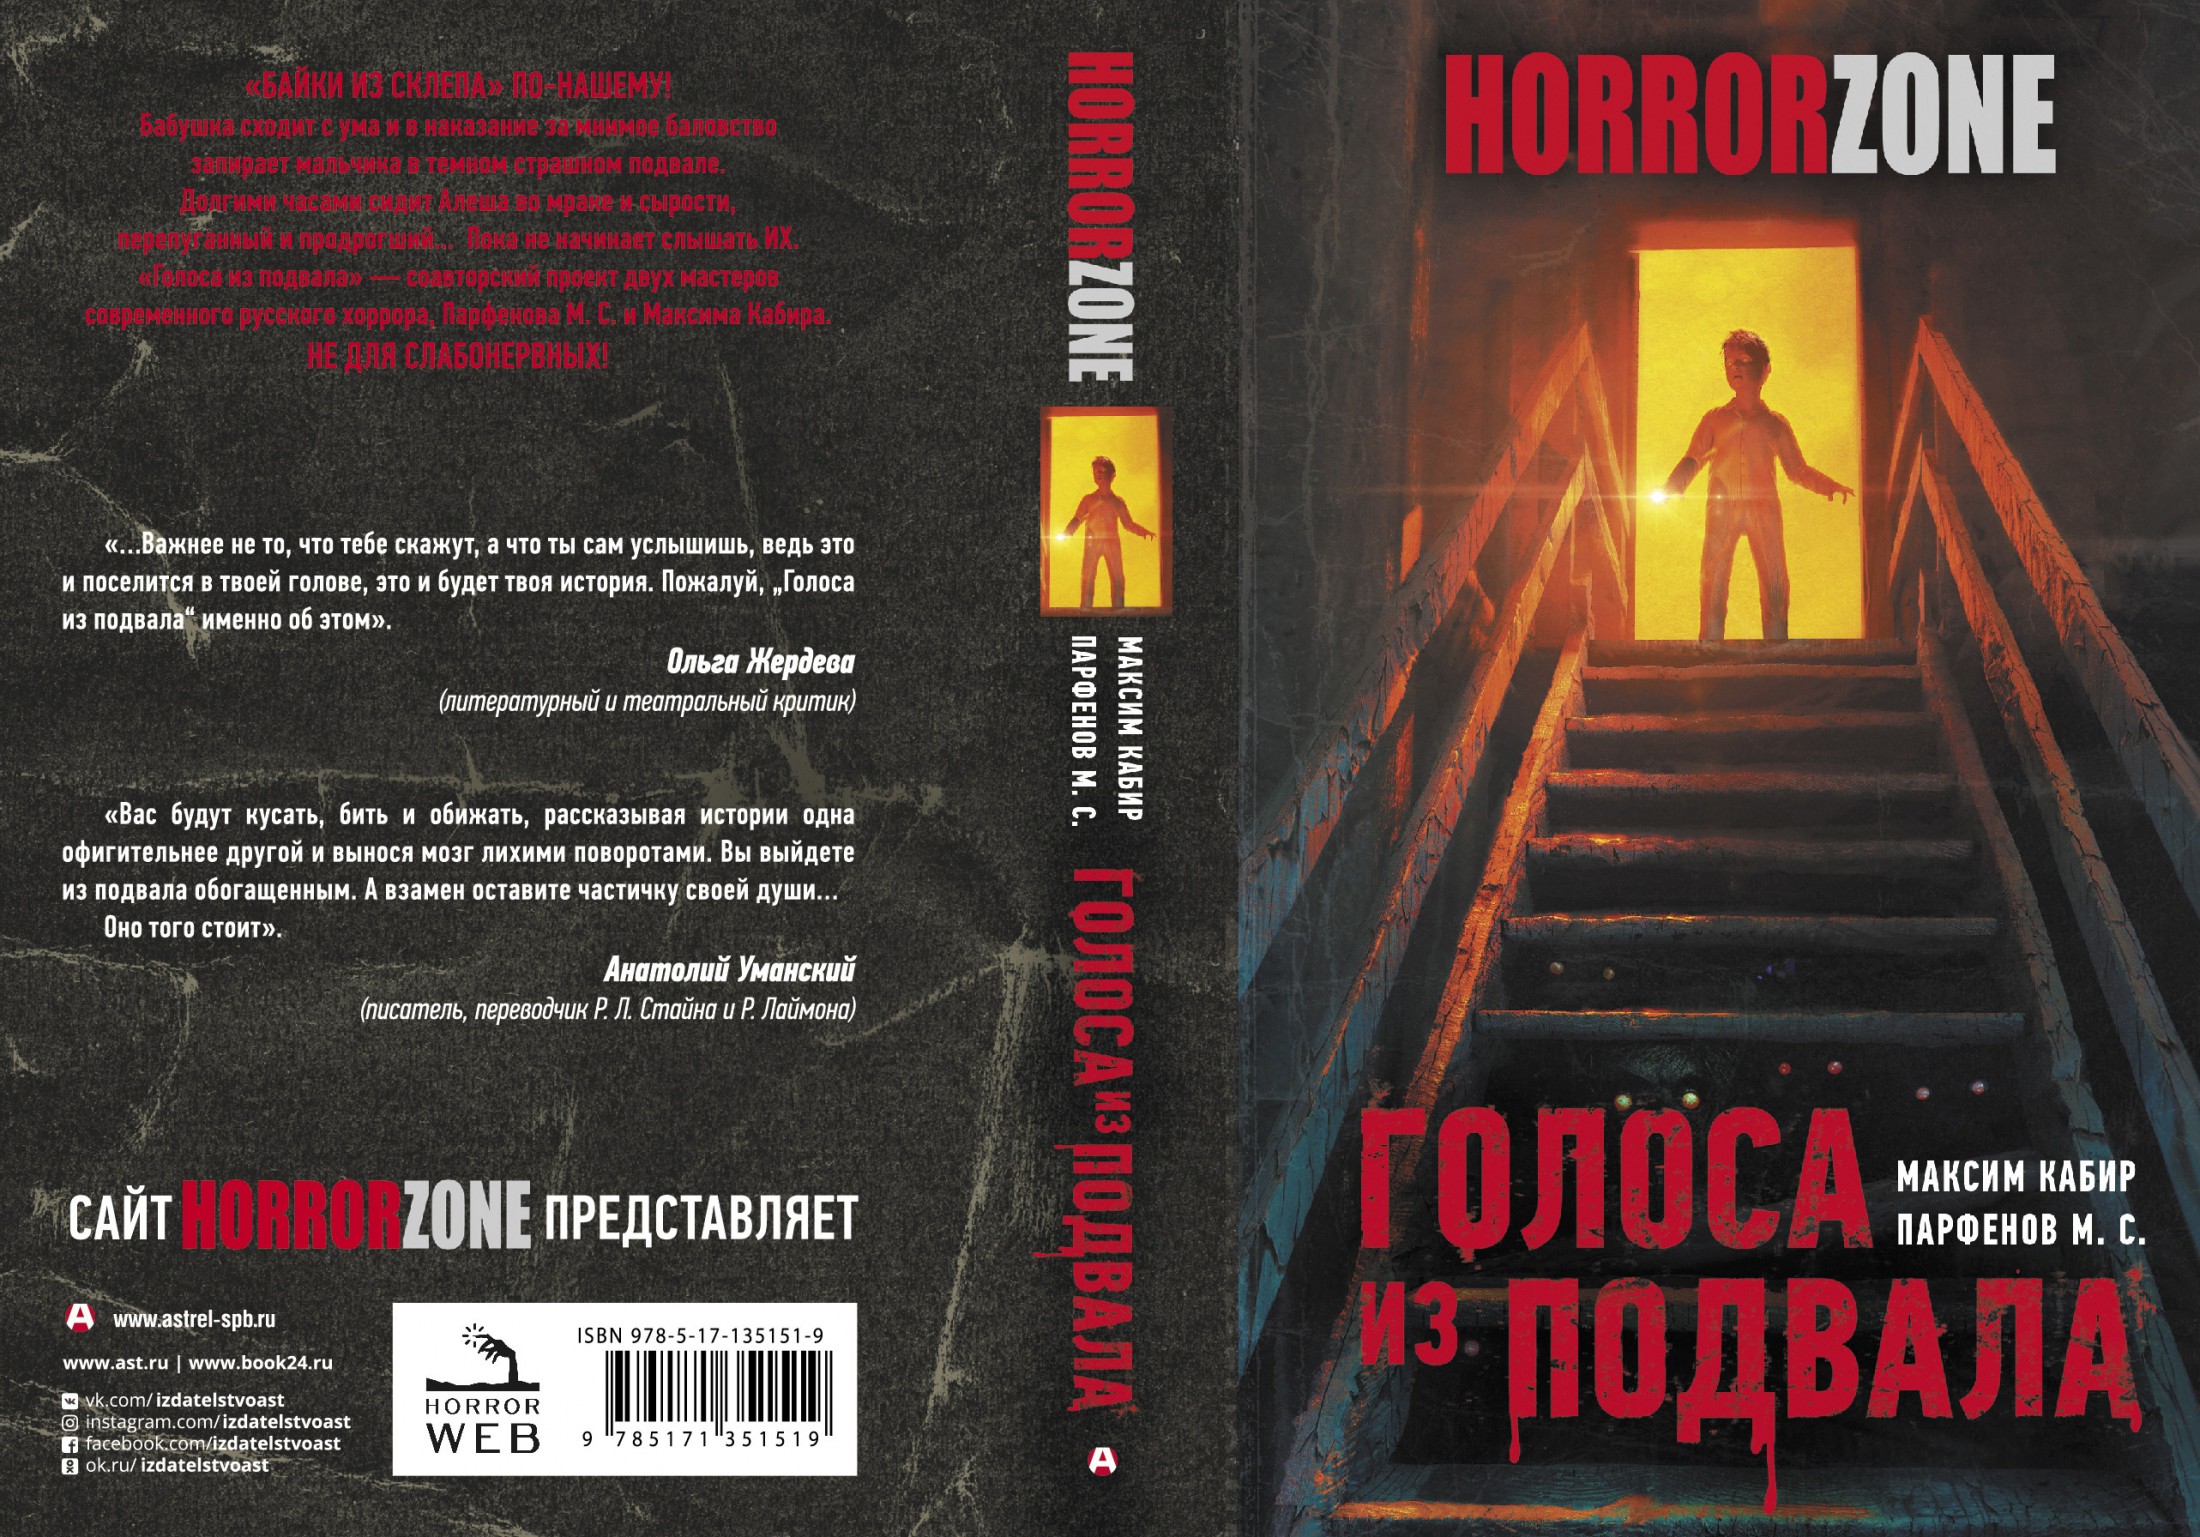 Horror Zone: Читаем первую книгу нашей серии, ГОЛОСА ИЗ ПОДВАЛА